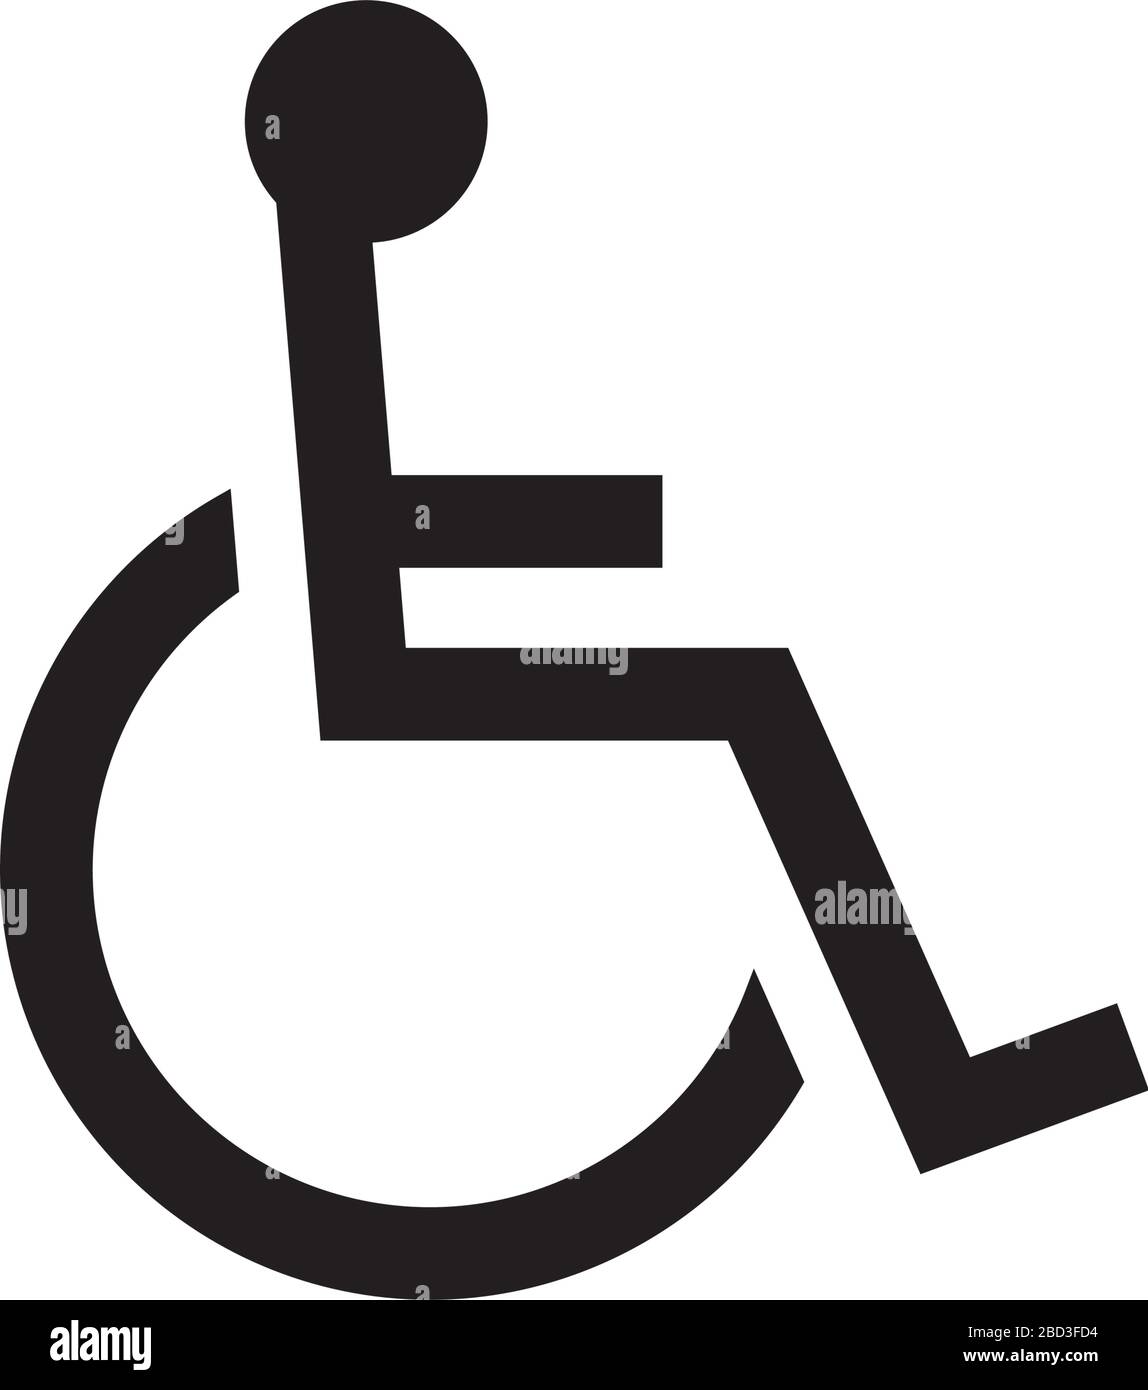 fauteuil roulant, icône pour handicapés / symbole d'information publique Illustration de Vecteur